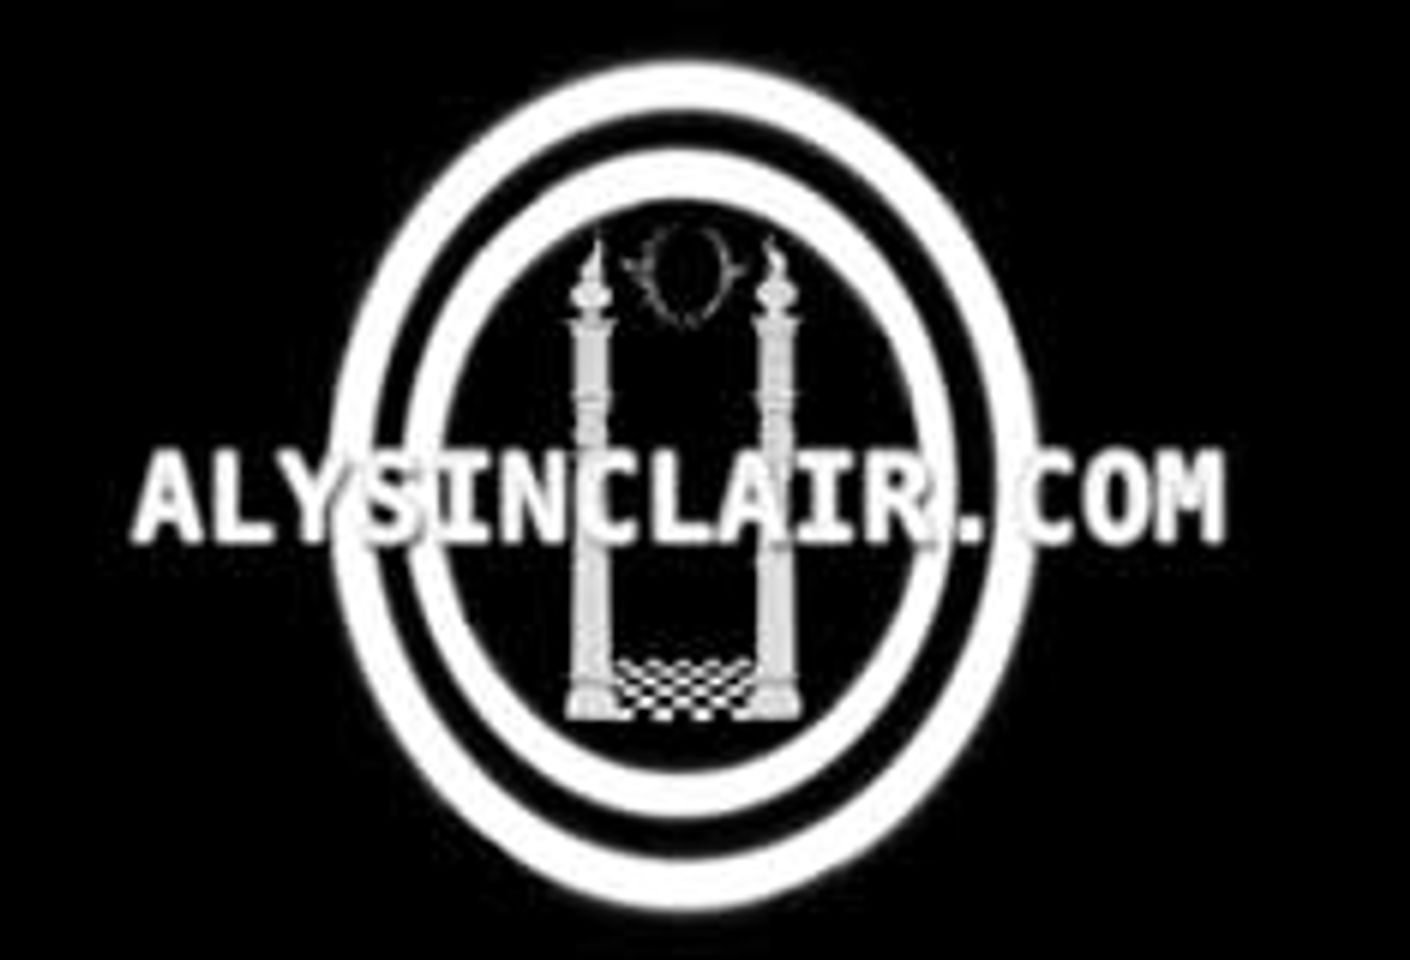 AlySinclair.com Launches